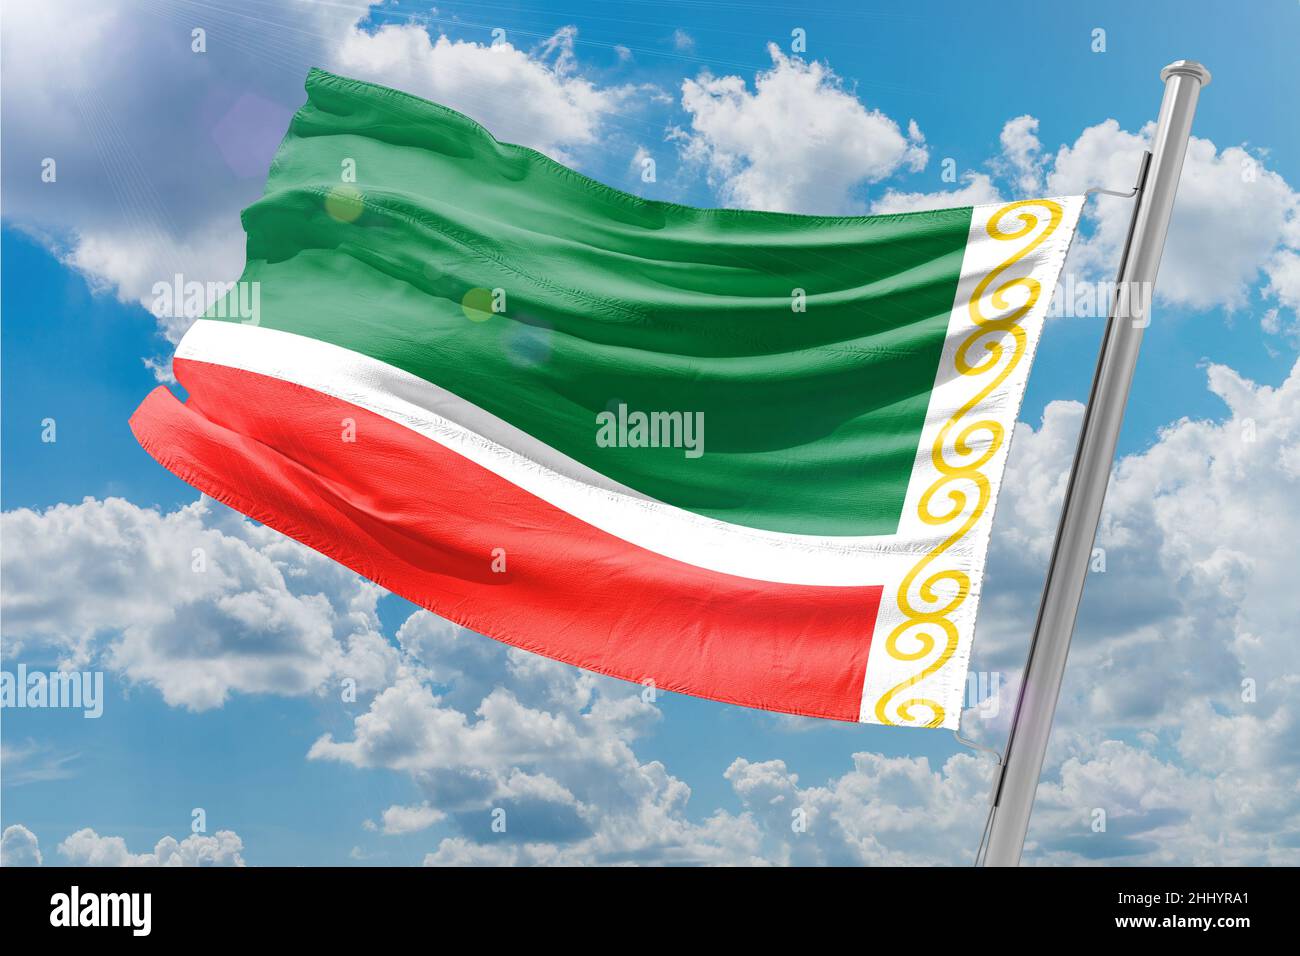 Die Flagge Tschetscheniens ist ein Rechteck mit Seiten im Verhältnis 2:3, das gleiche Verhältnis wie die Flagge der Russischen Föderation. Stockfoto